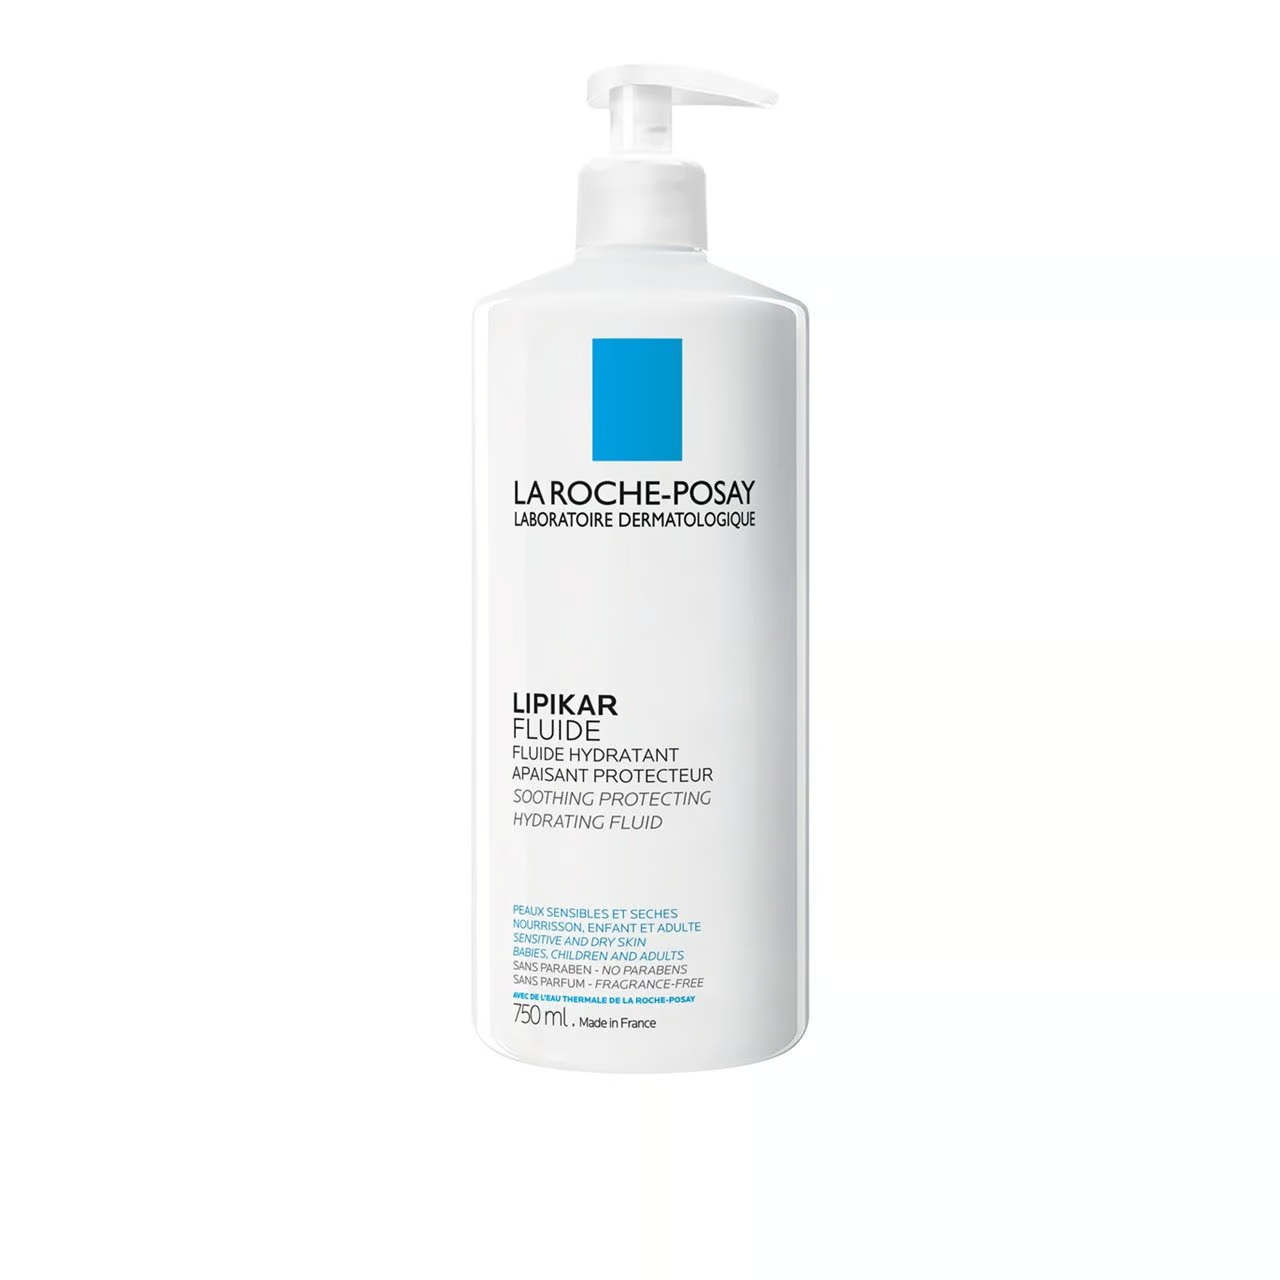 la-roche-posay-lipikar-fluide-hydrating-fluid-750ml